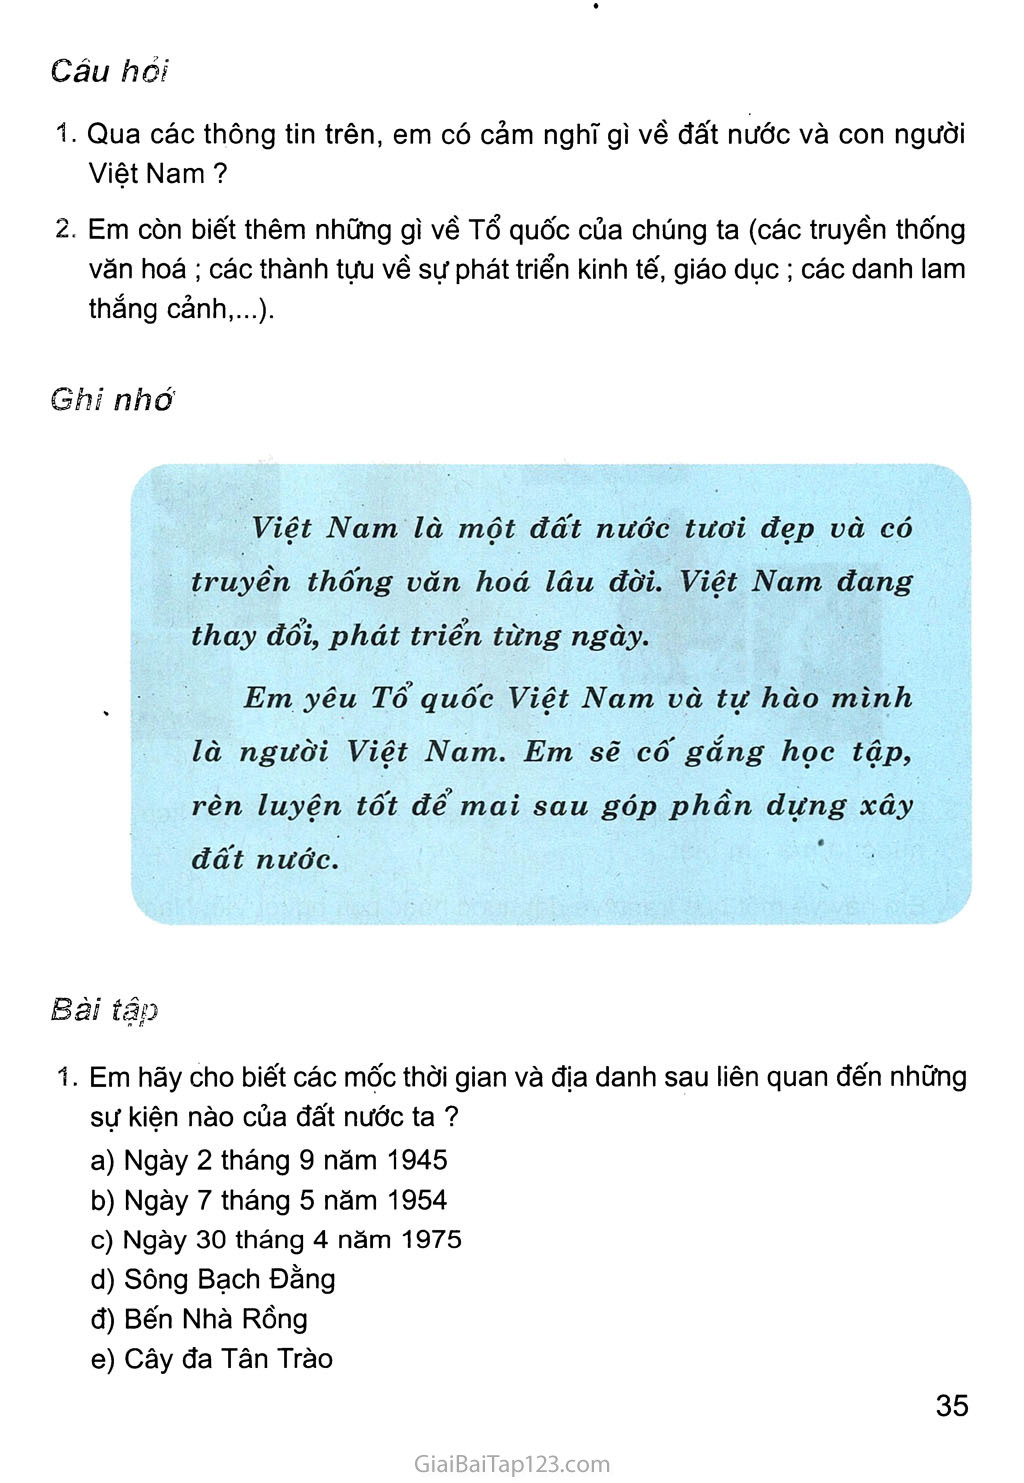 Bài 11. Em yêu tổ quốc Việt Nam trang 2